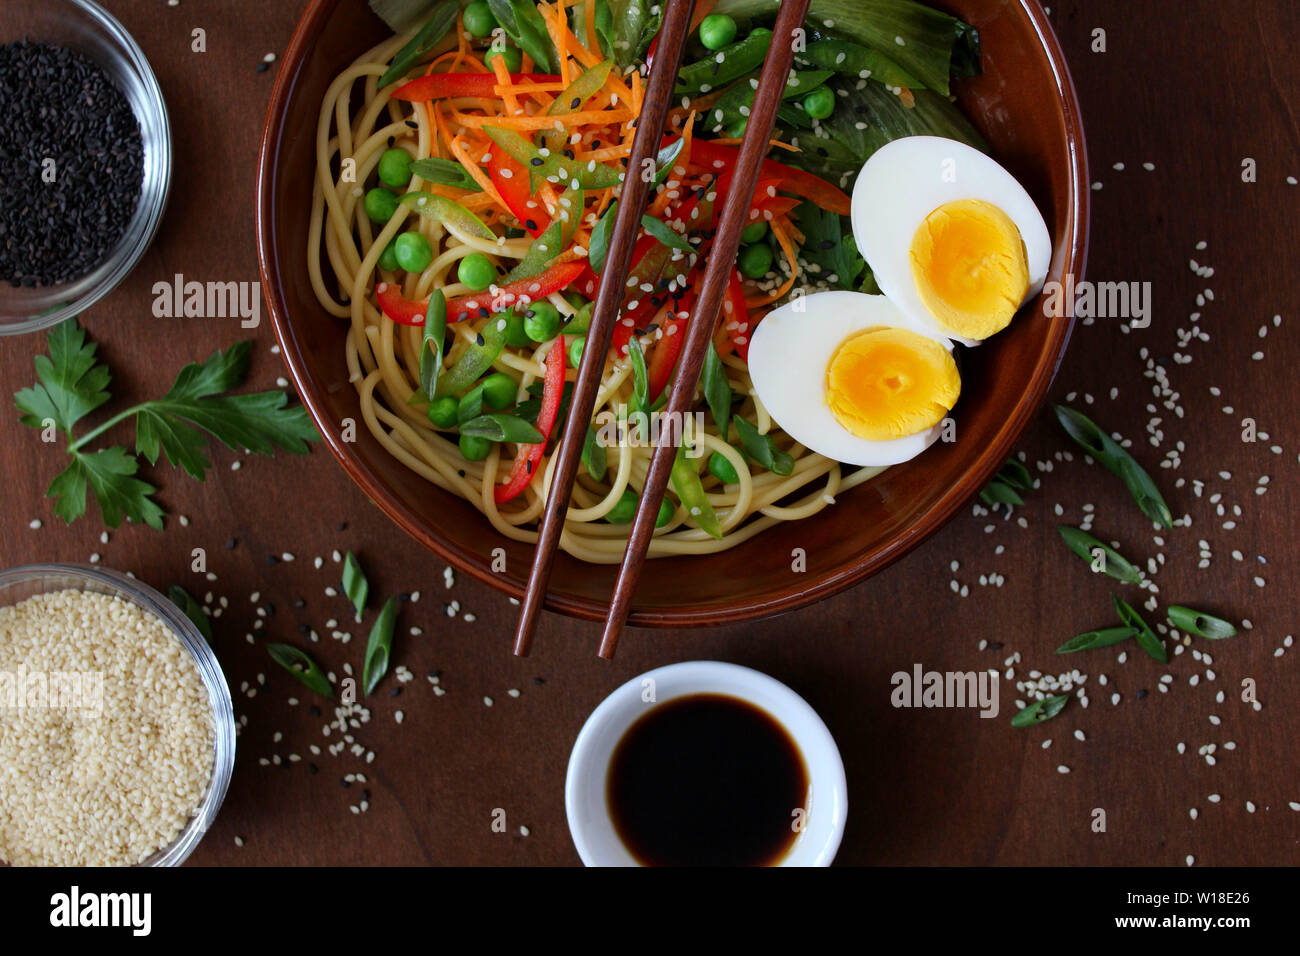 Les nouilles avec les légumes et les œufs dans un bol sur fond sombre. Vue de dessus avec l'exemplaire de l'espace. La cuisine asiatique. Banque D'Images